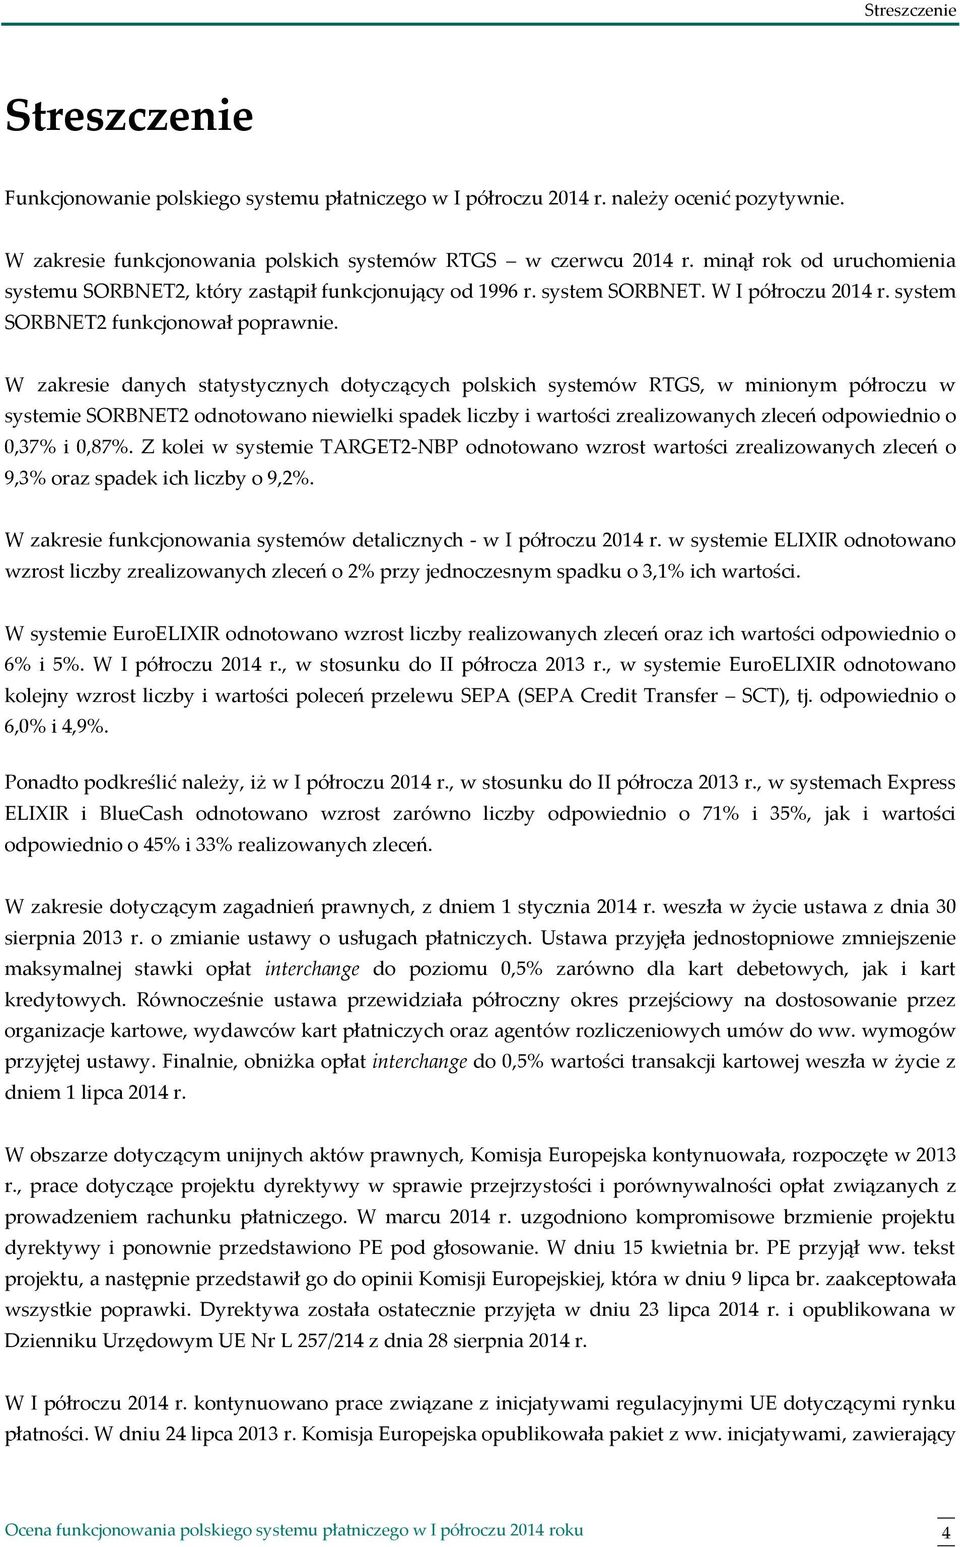 W zakresie danych statystycznych dotyczących polskich systemów RTGS, w minionym półroczu w systemie SORBNET2 odnotowano niewielki spadek liczby i wartości zrealizowanych zleceń odpowiednio o 0,37% i